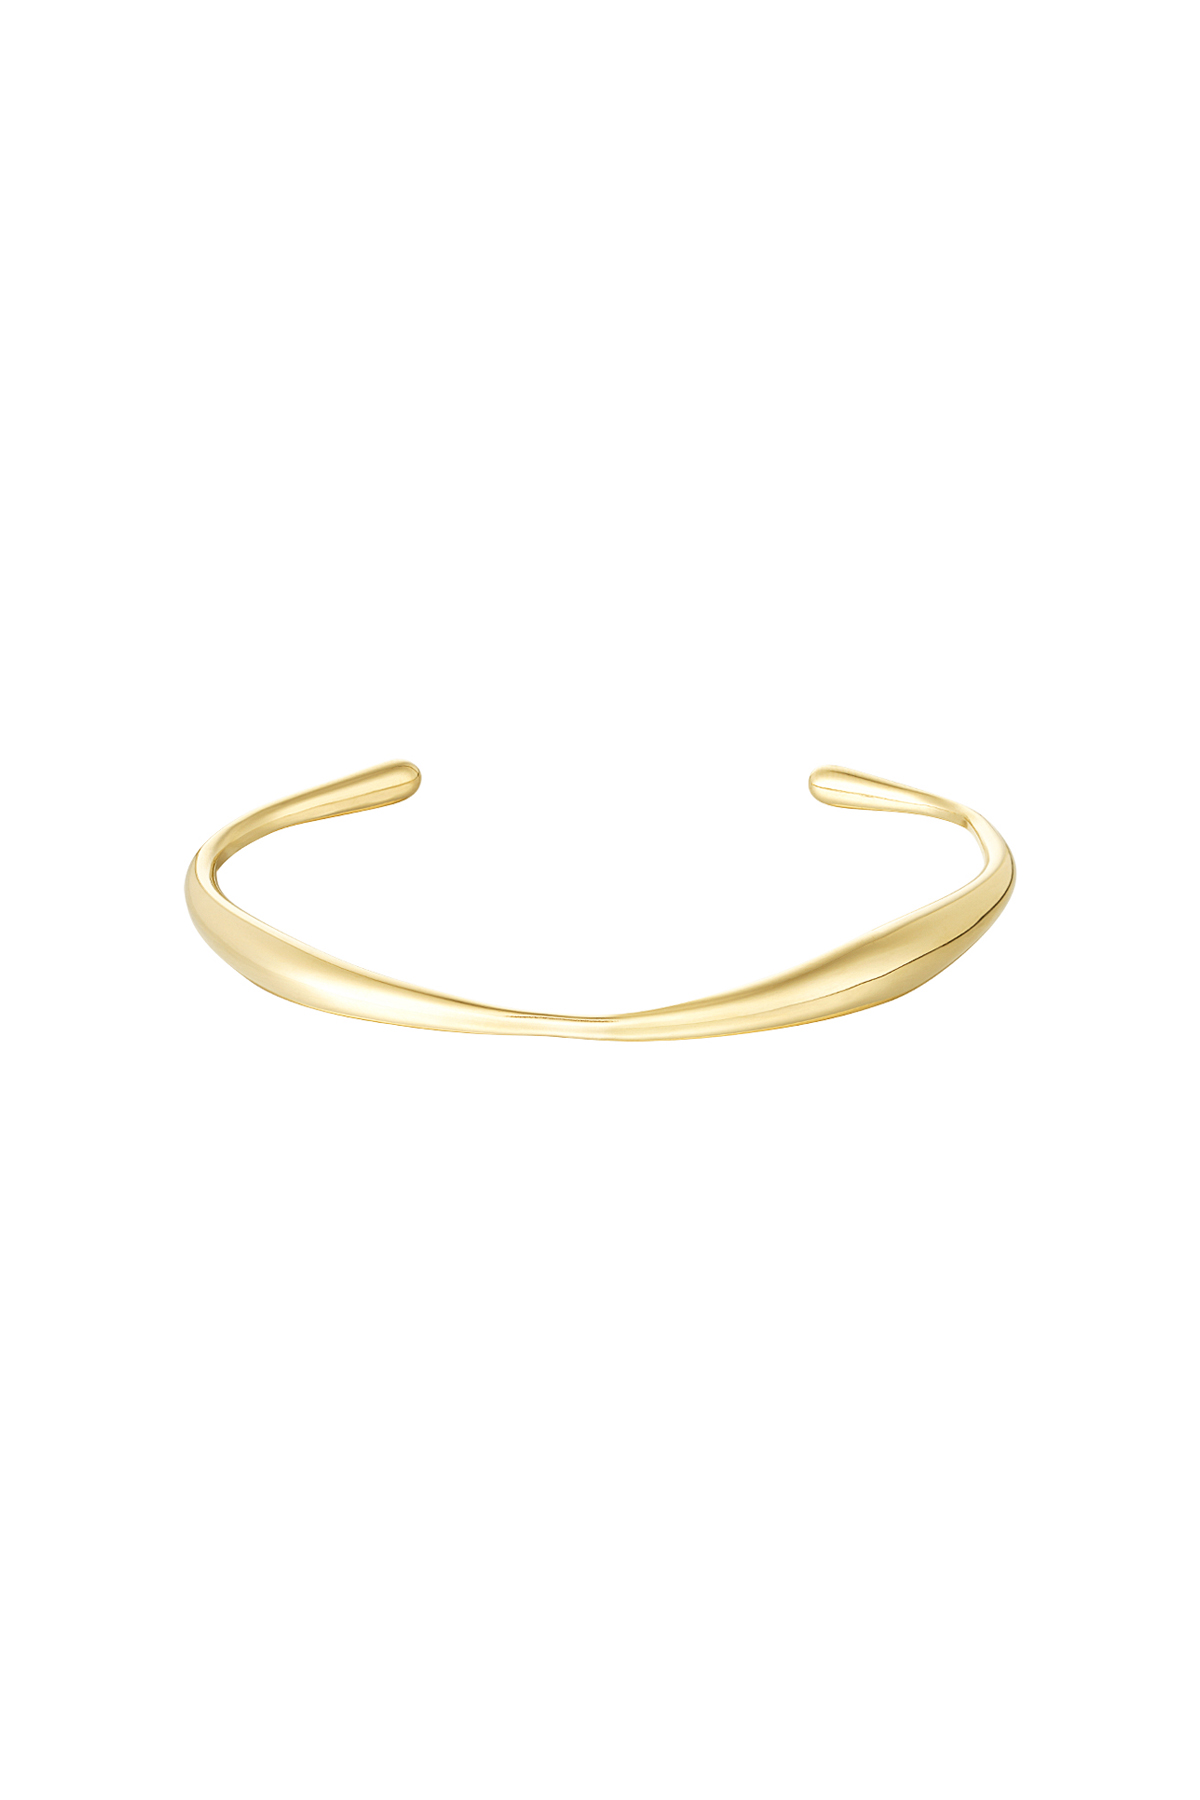 Organische vorm armband - goud h5 